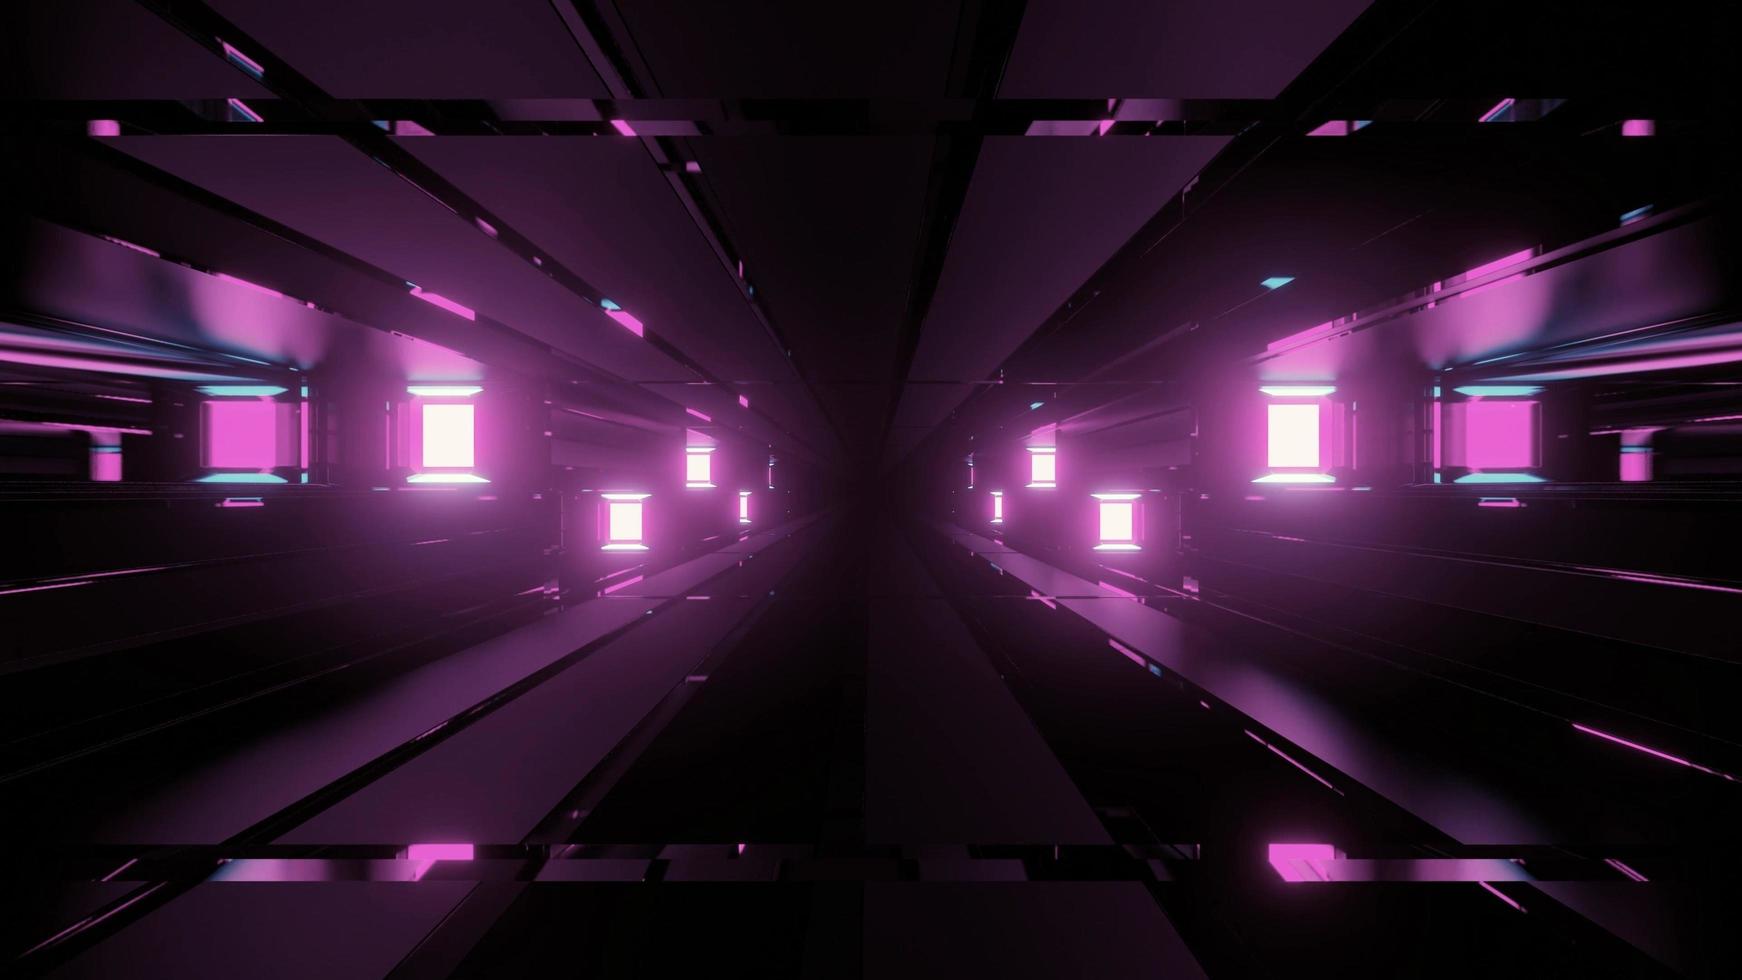 ilustração 3d futurística de blocos e luzes violetas foto